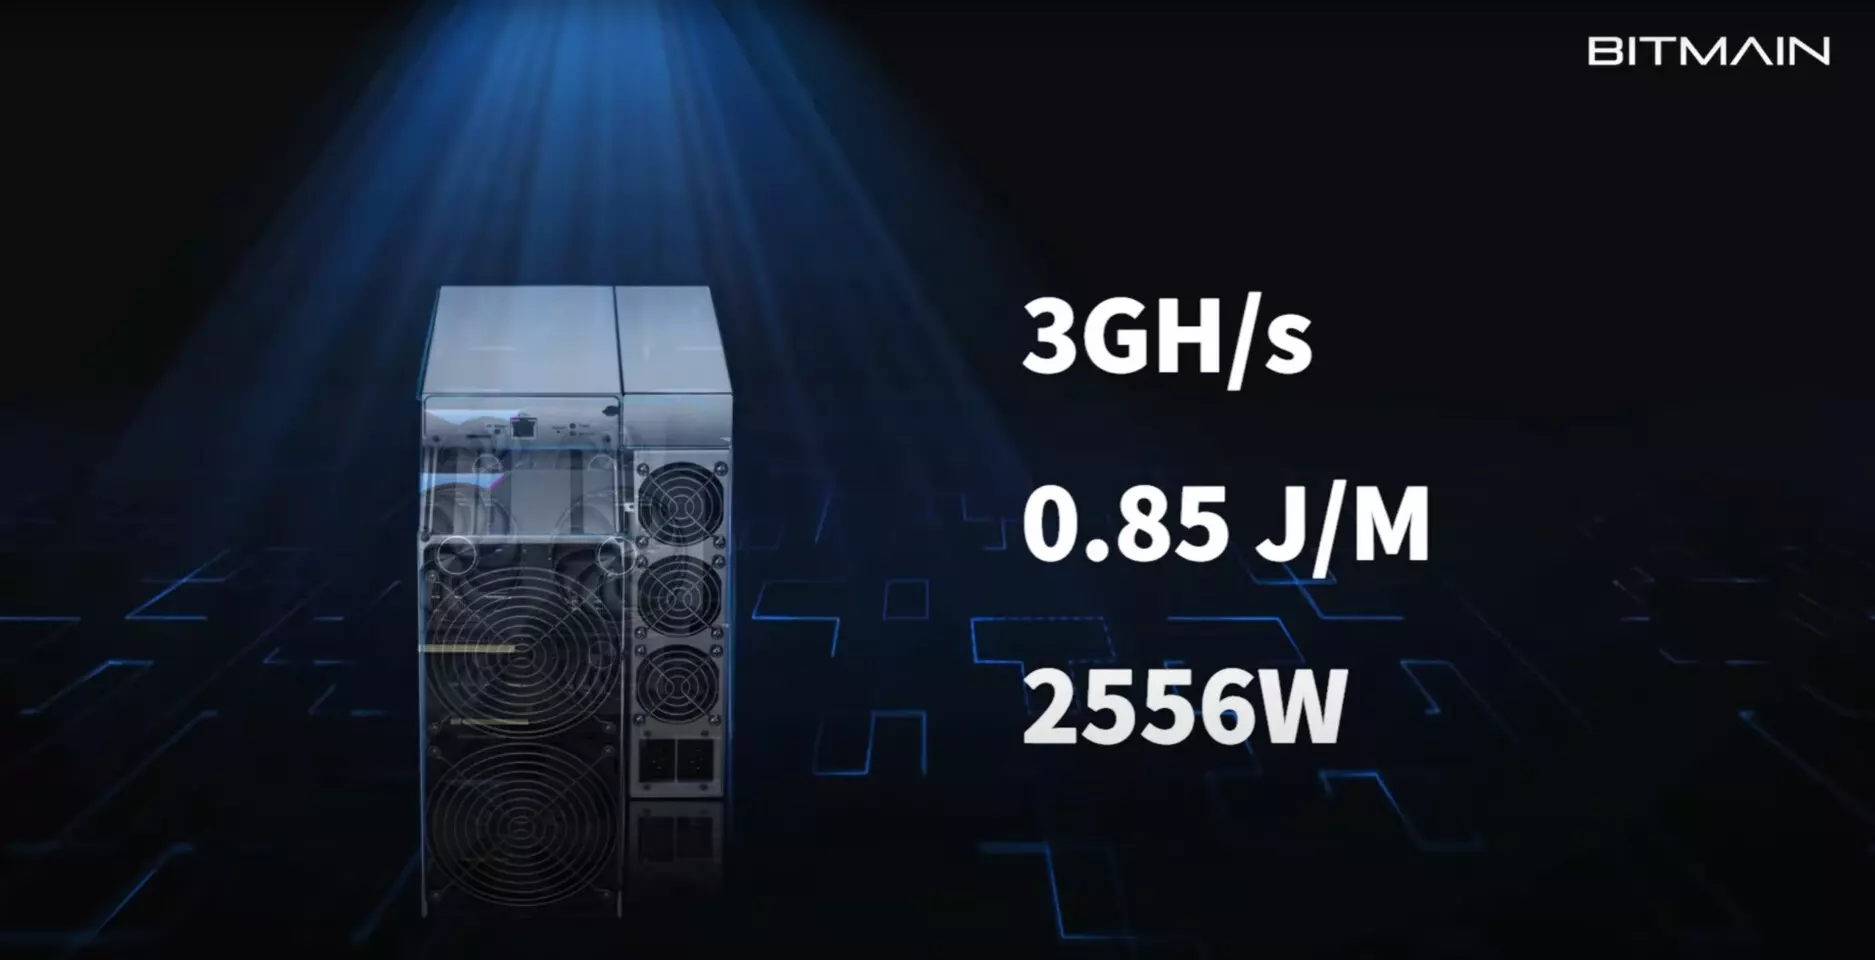 32 darab GeForce RTX 3080-as teljesítményével bányászik az új Ethereum célhardver